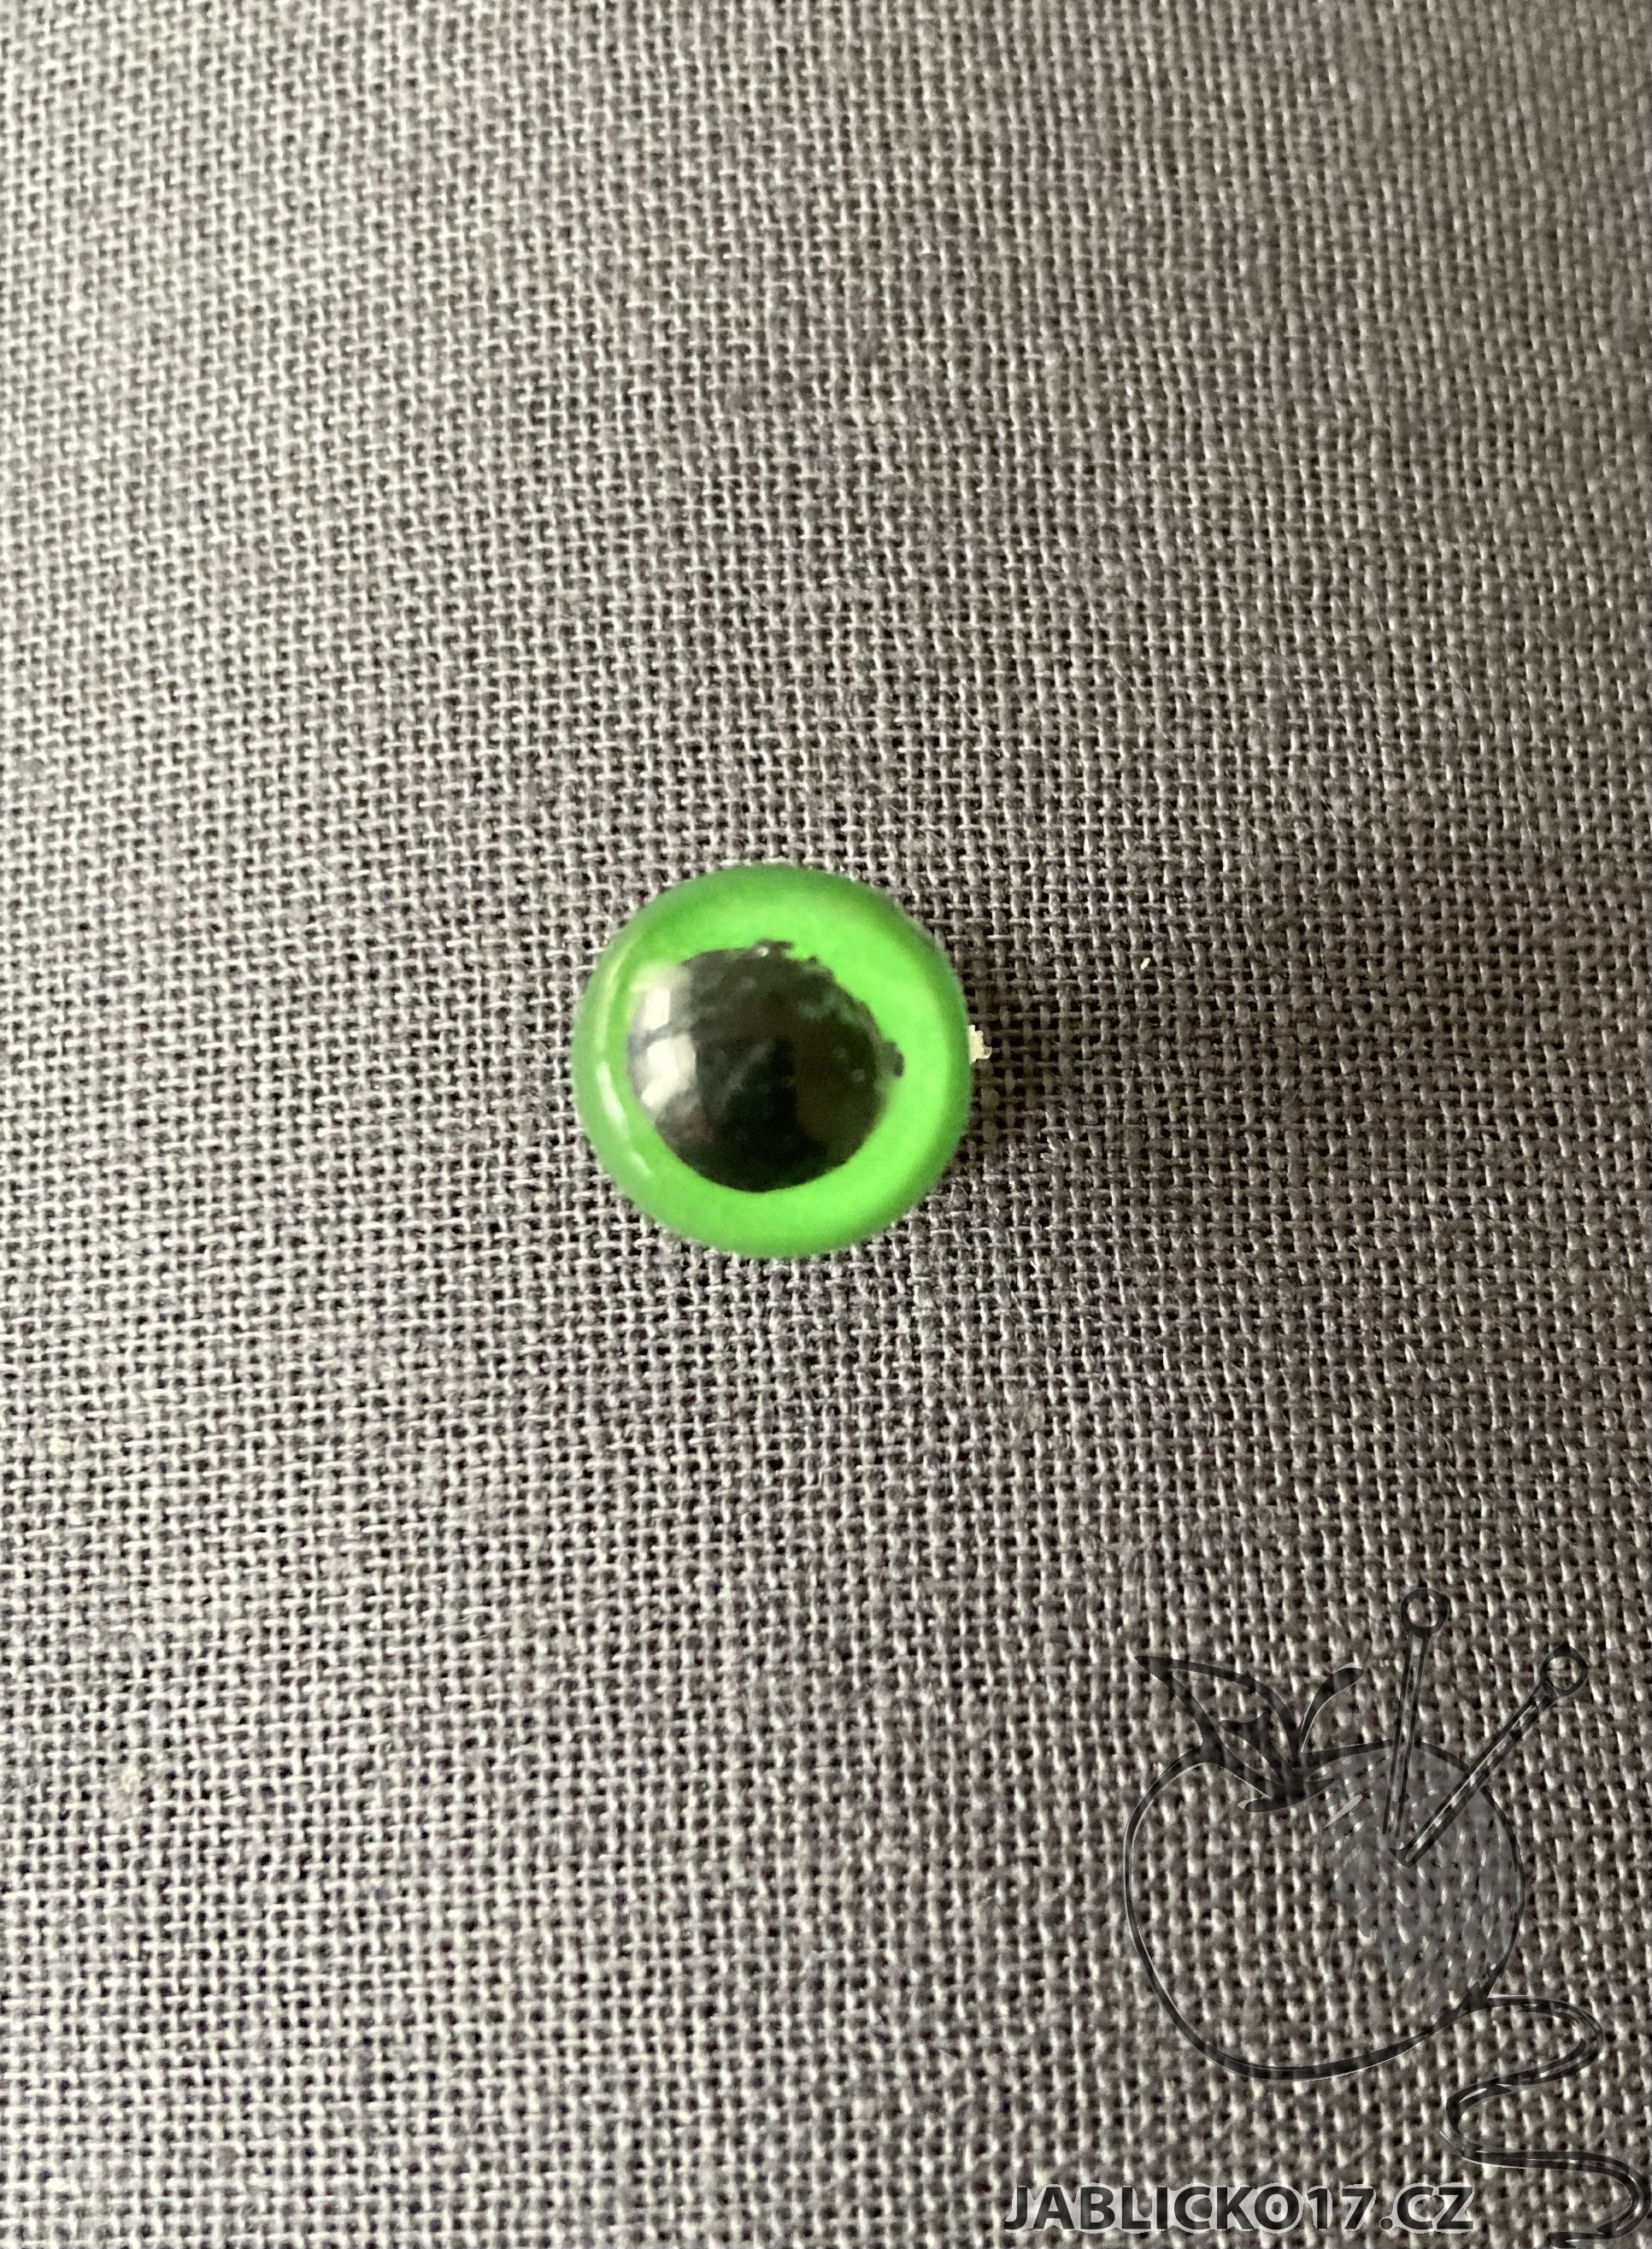 Bezpečnostní oko 12 mm zelená